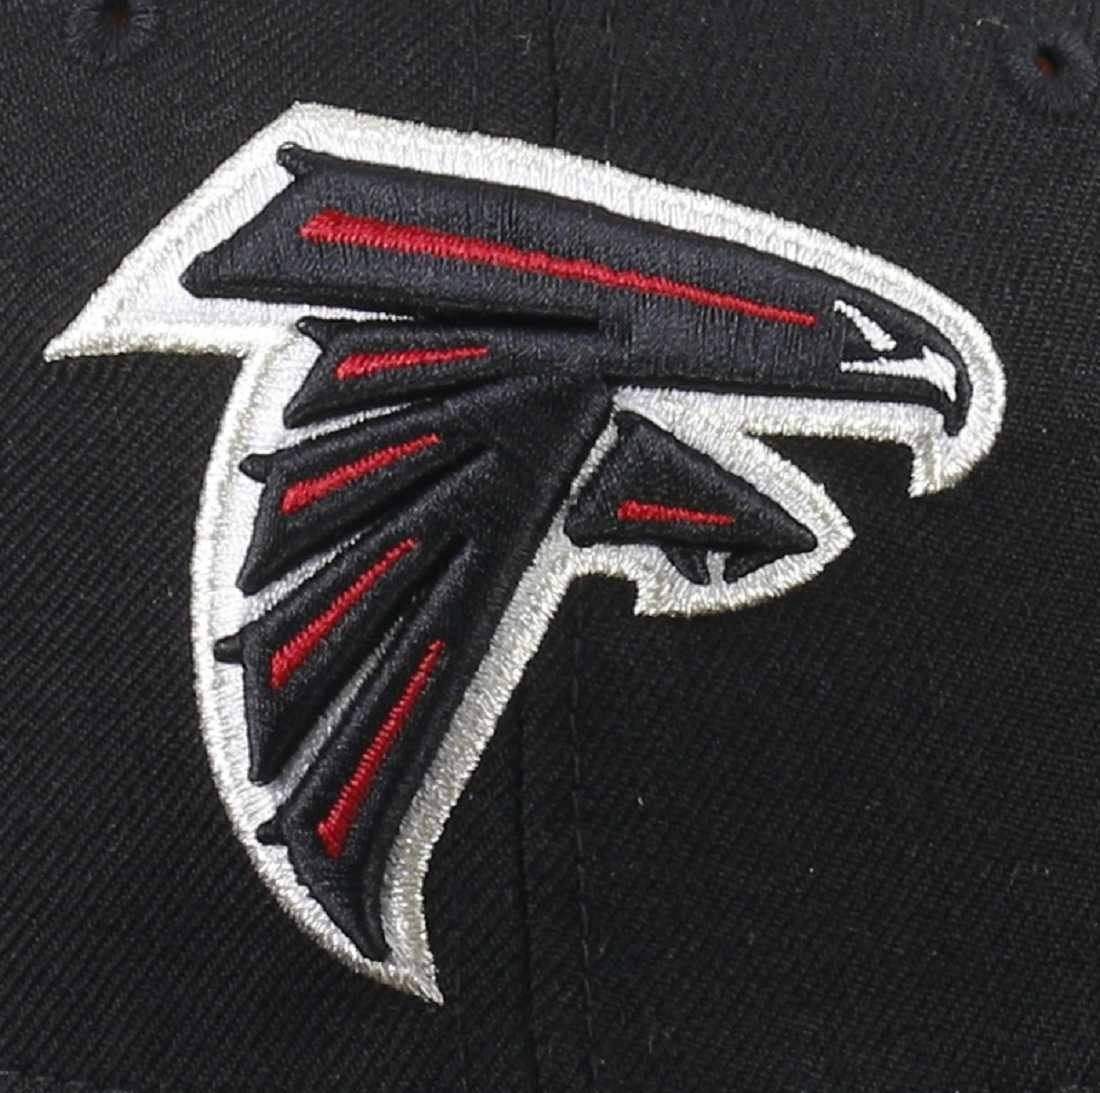 Atlanta Falcons Clean Black 59Fifty Cap New Era